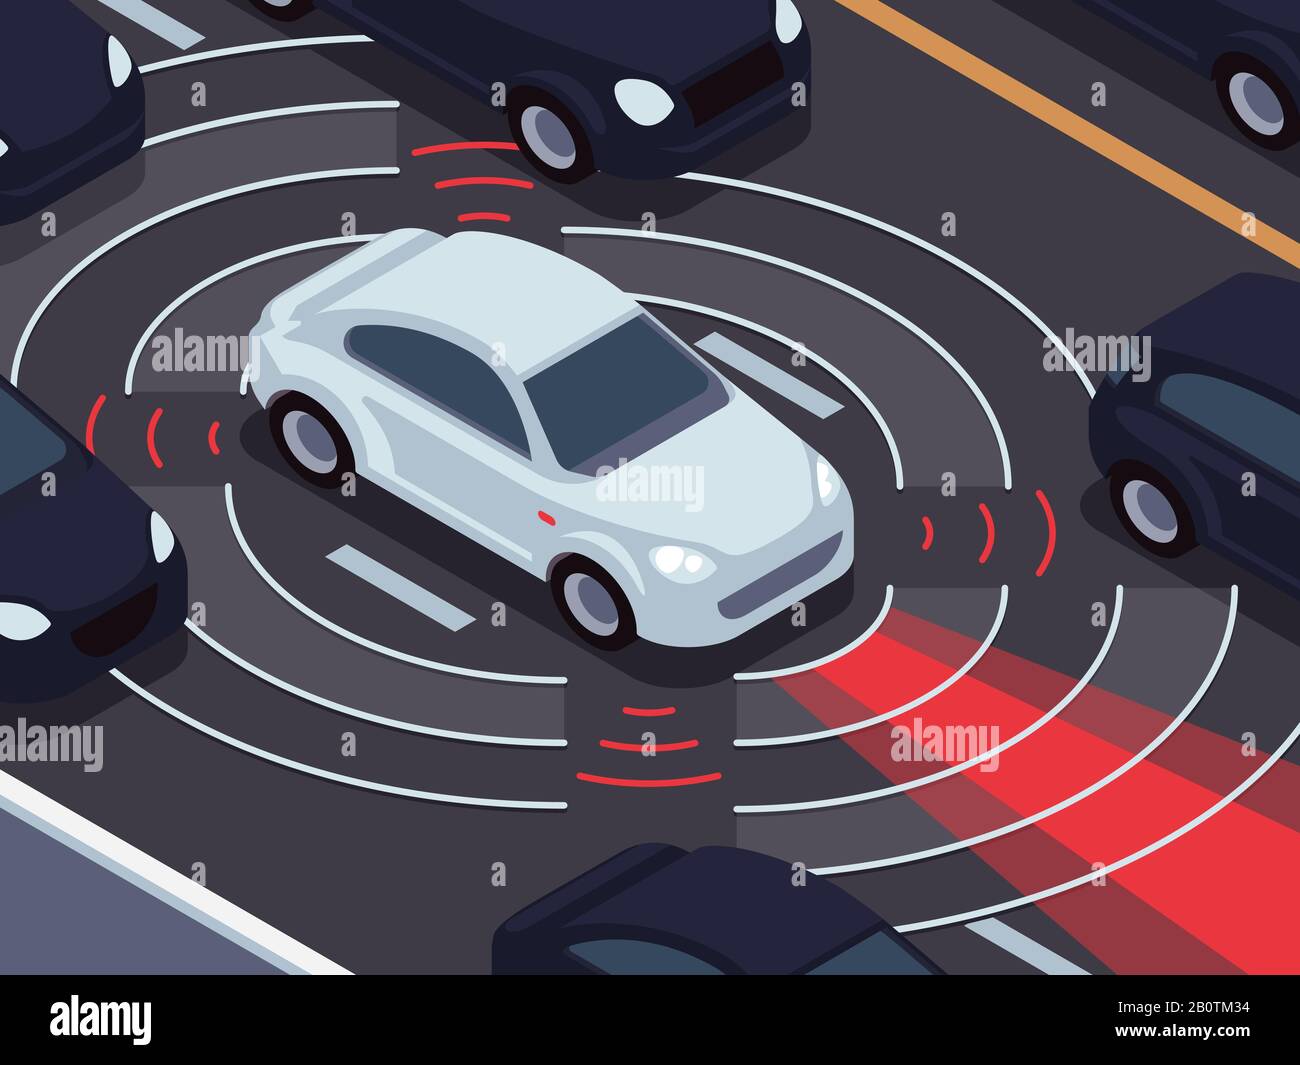 Capteurs et radars : vers la voiture autonome